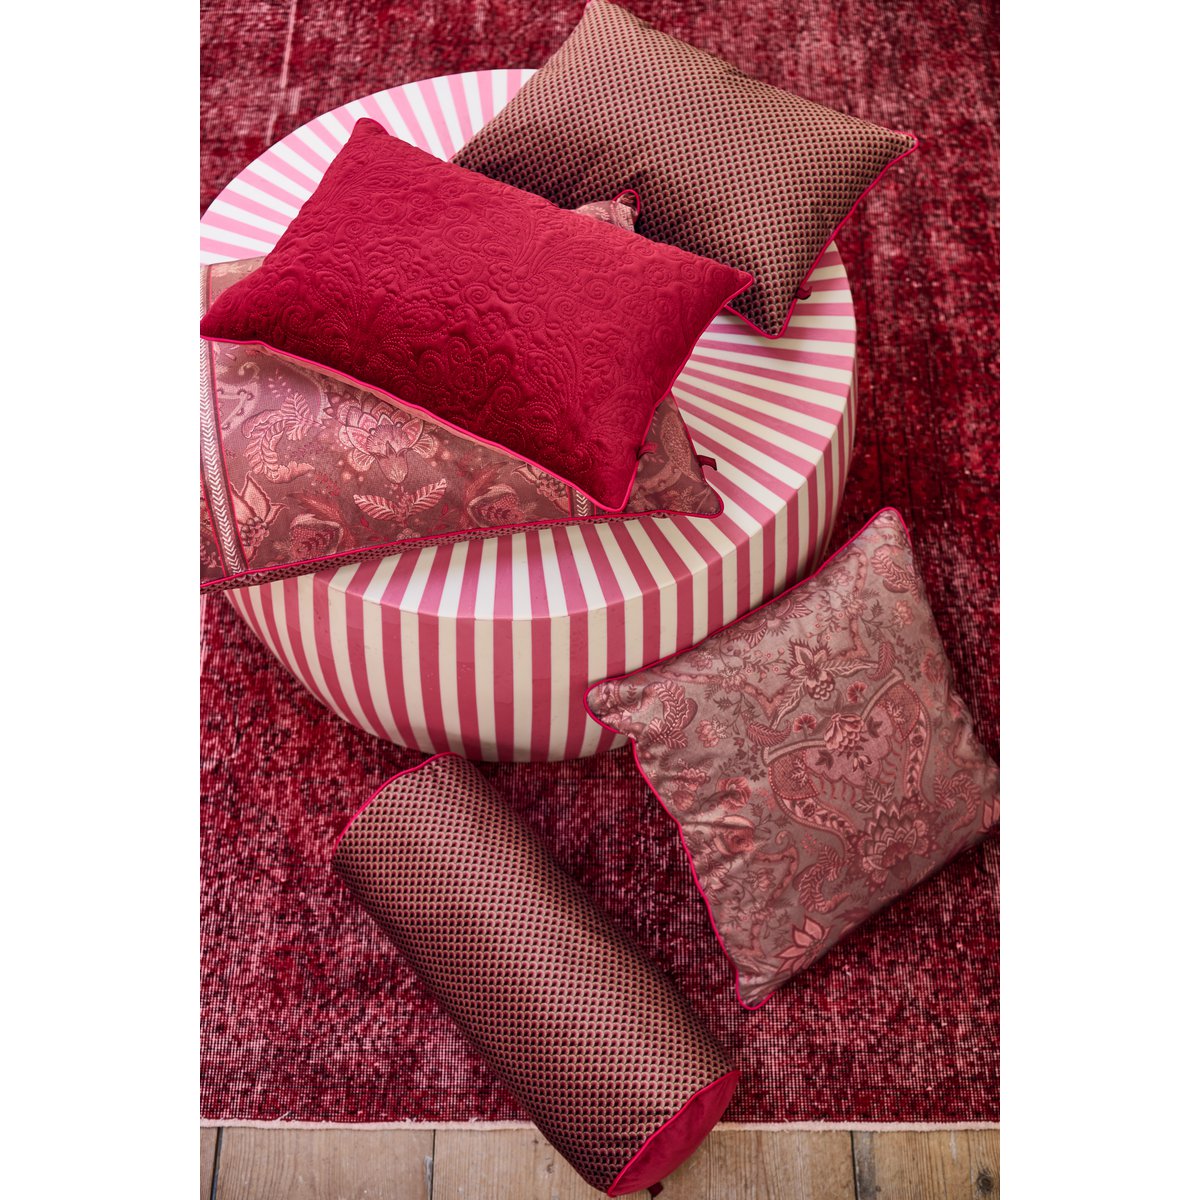 Cushion Quiltey Days Dark Pink 50x35cm